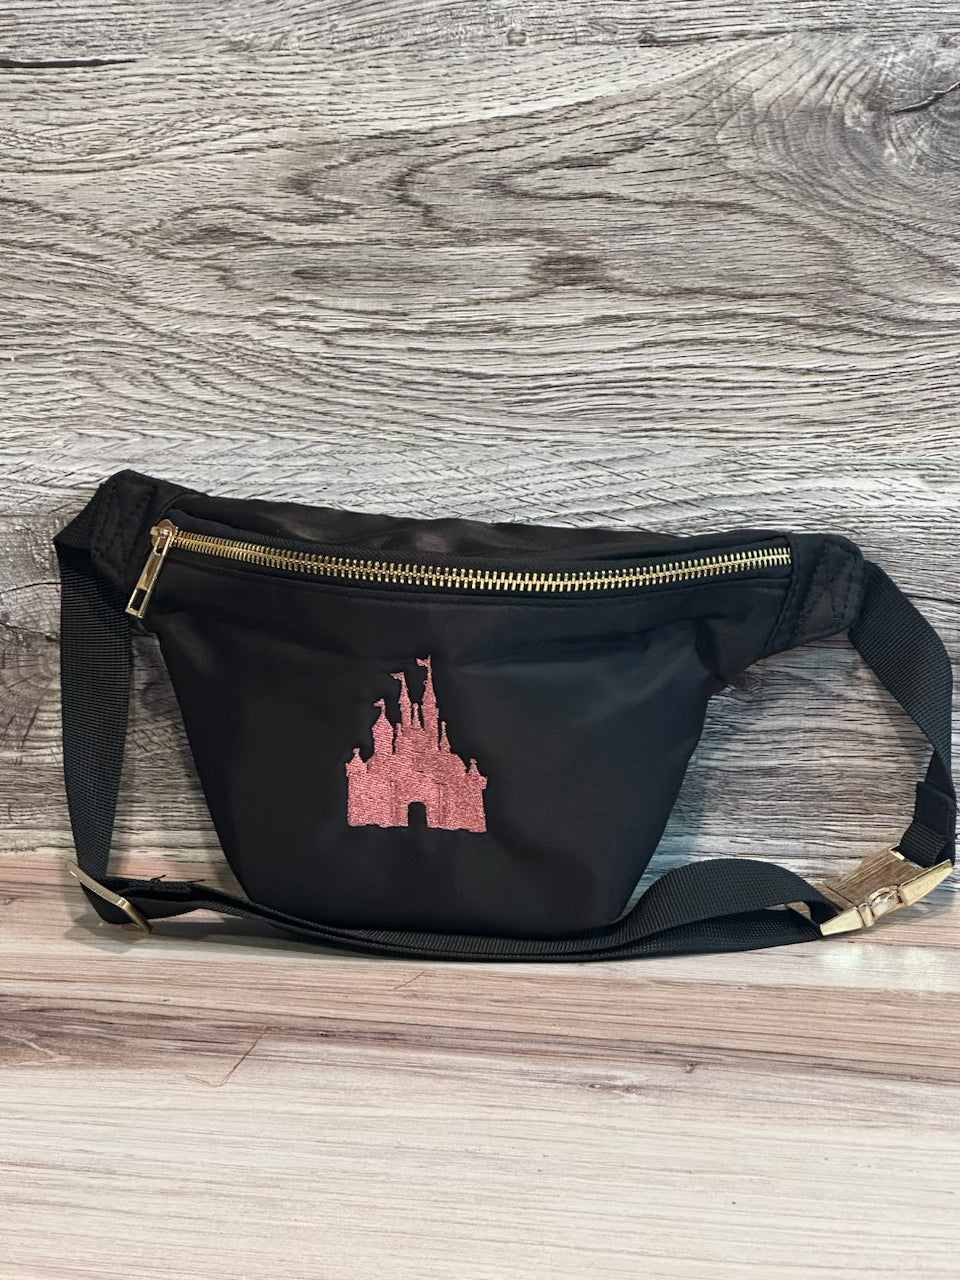 Fanny/Sling Bag Black with Pink Castle